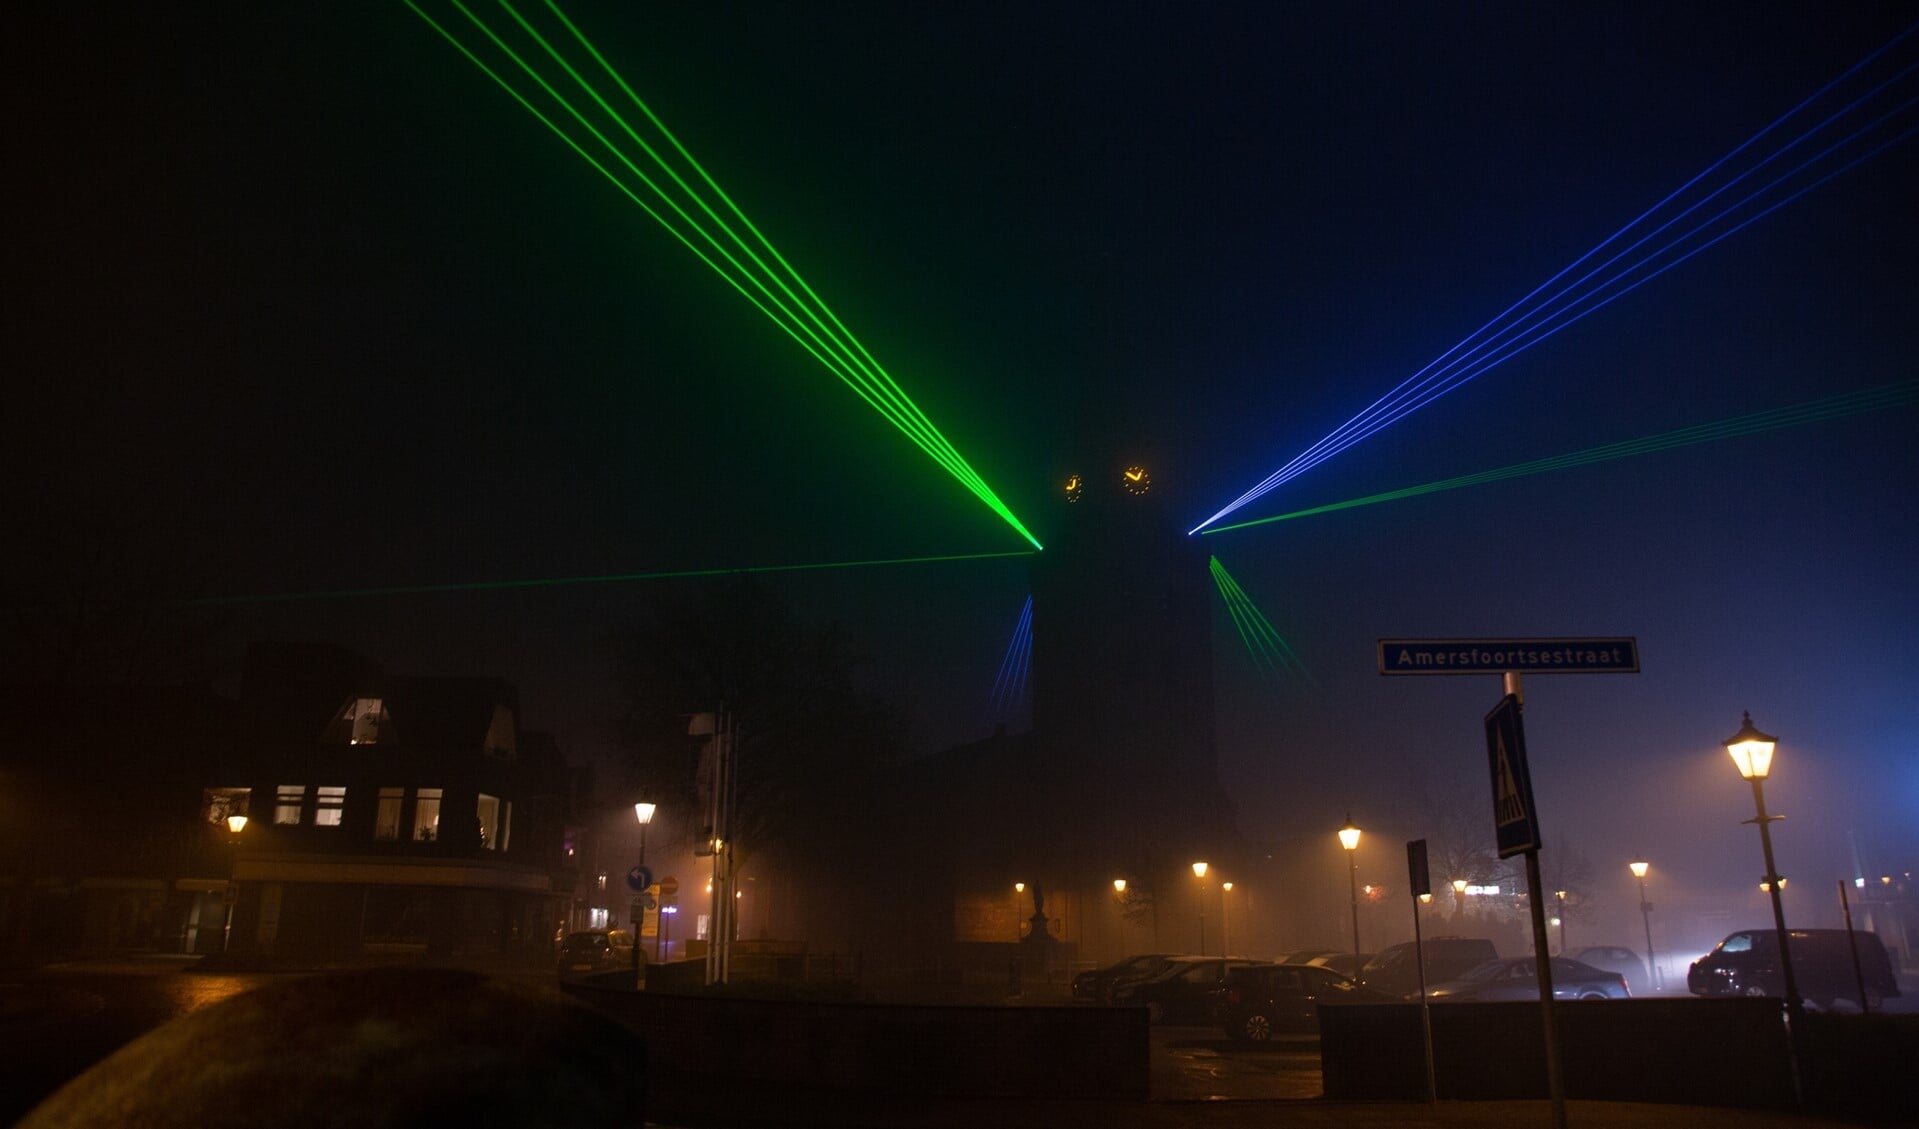 Vorig jaar was er in Barneveld sprake van een vuurwerkverbod. In plaats daarvan werd daarom een lasershow gehouden.